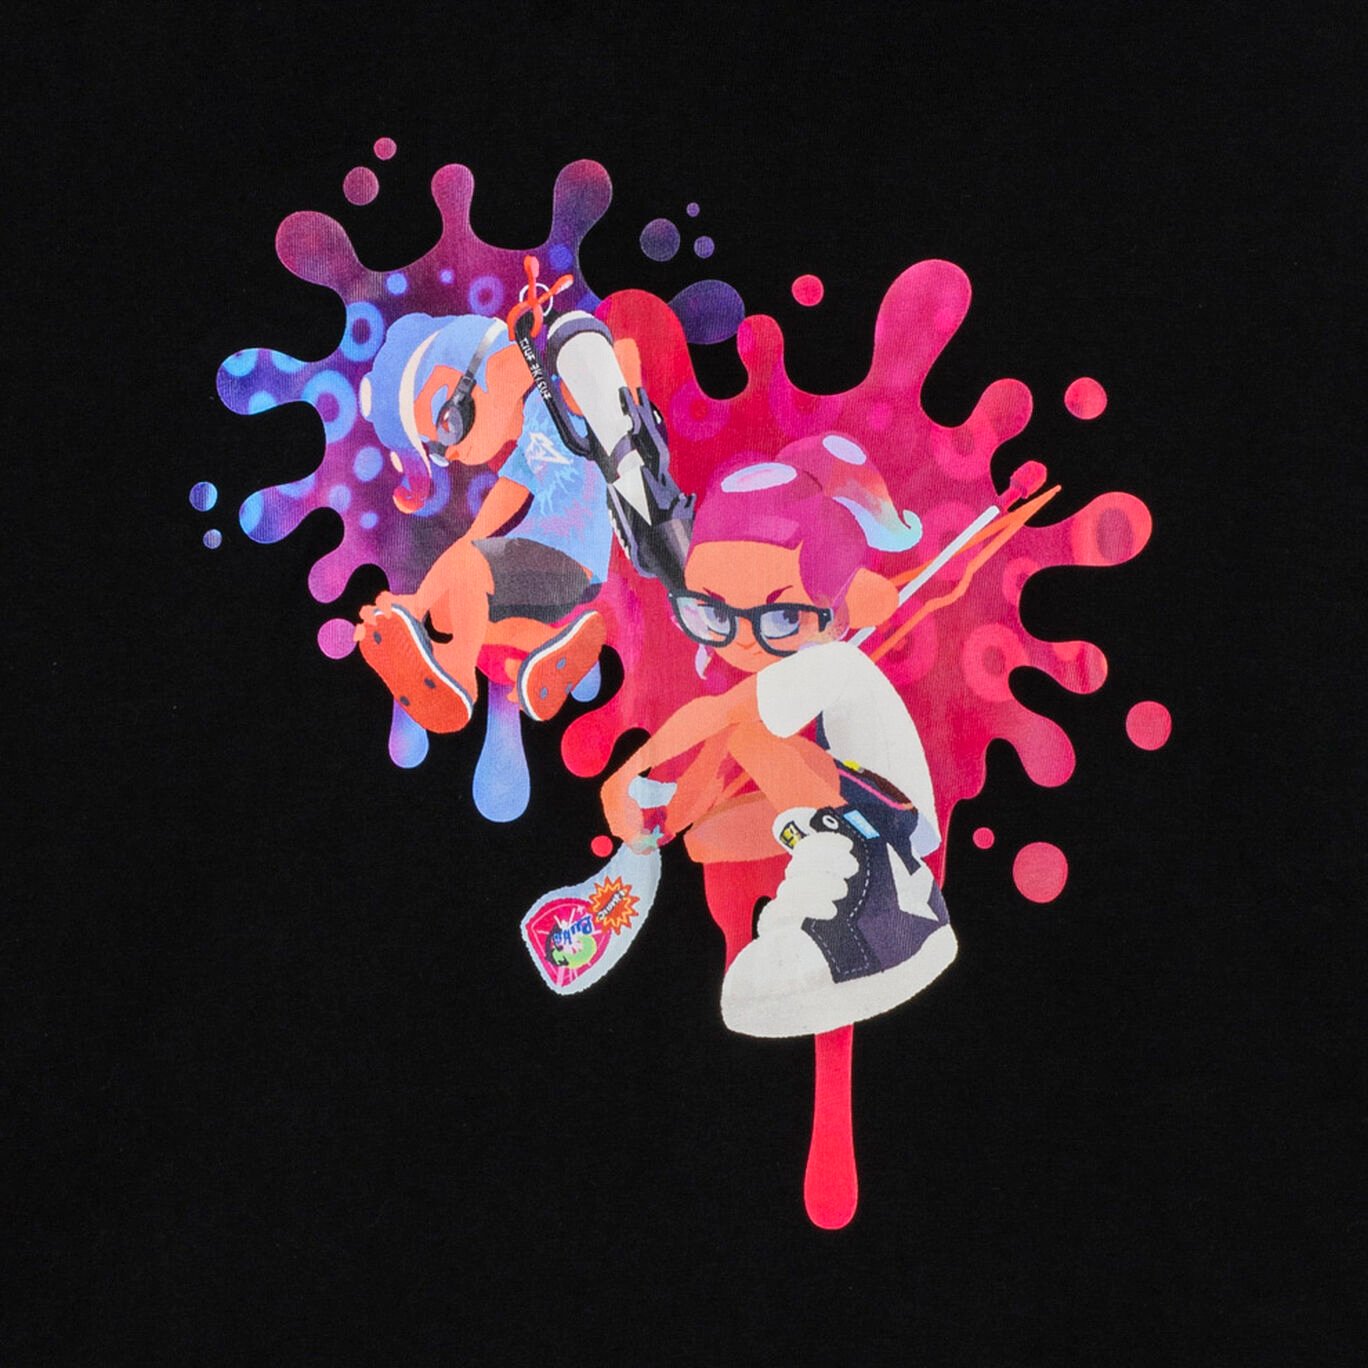 Tシャツ黒 S SQUID or OCTO Splatoon【Nintendo TOKYO取り扱い商品】